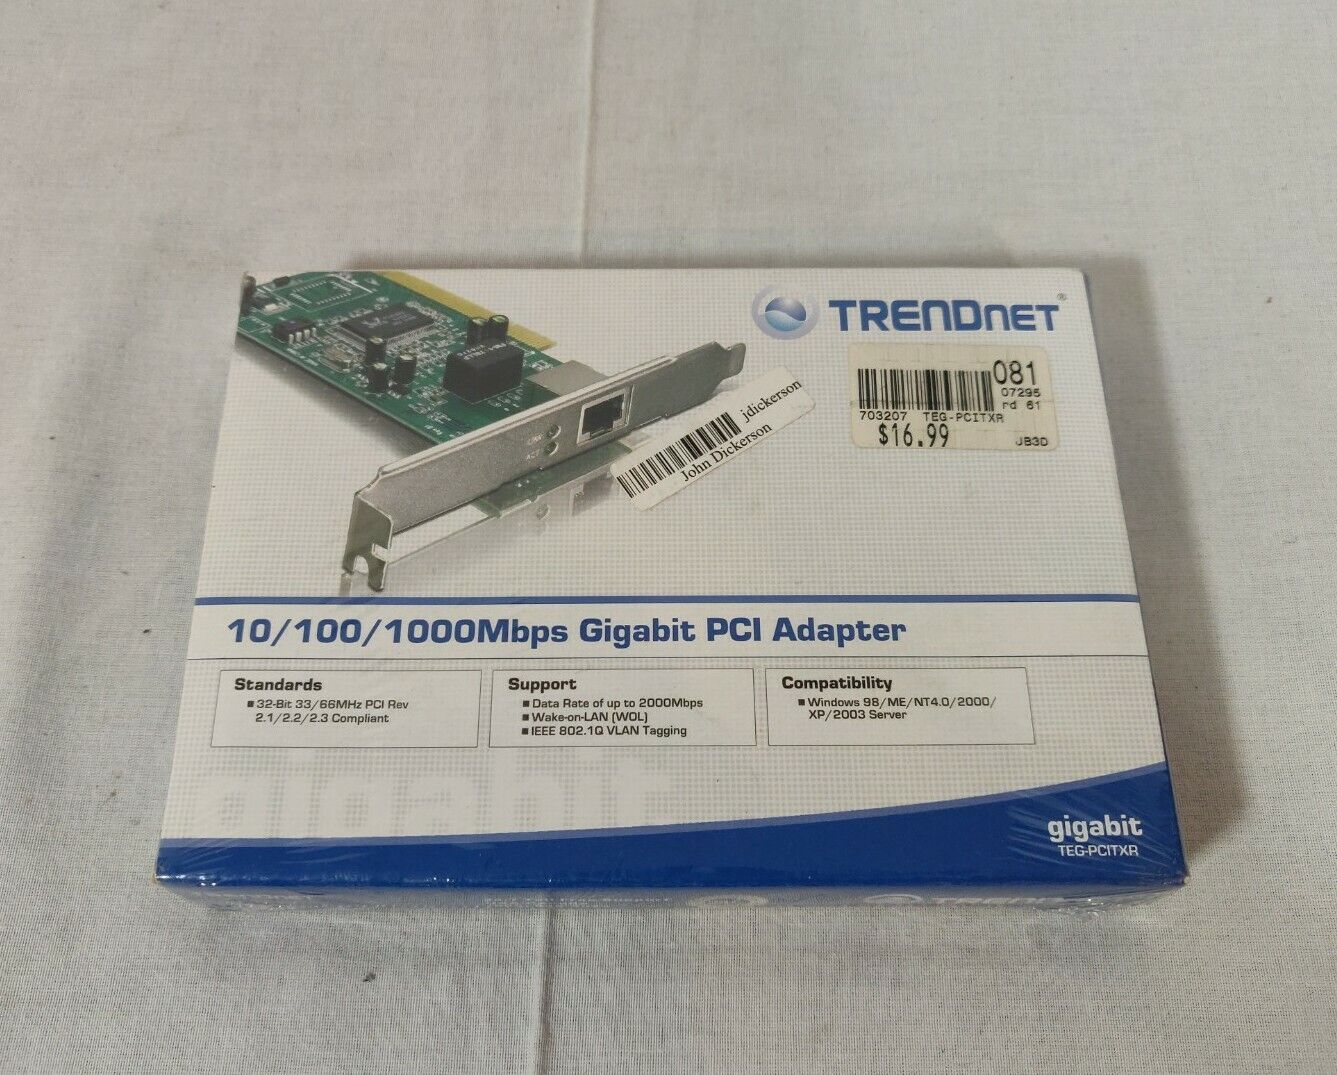 Trendnet 10/100/1000 Mbps Gigabit PCI Adapter (TEG-PCITXR) - Vintage, Sealed